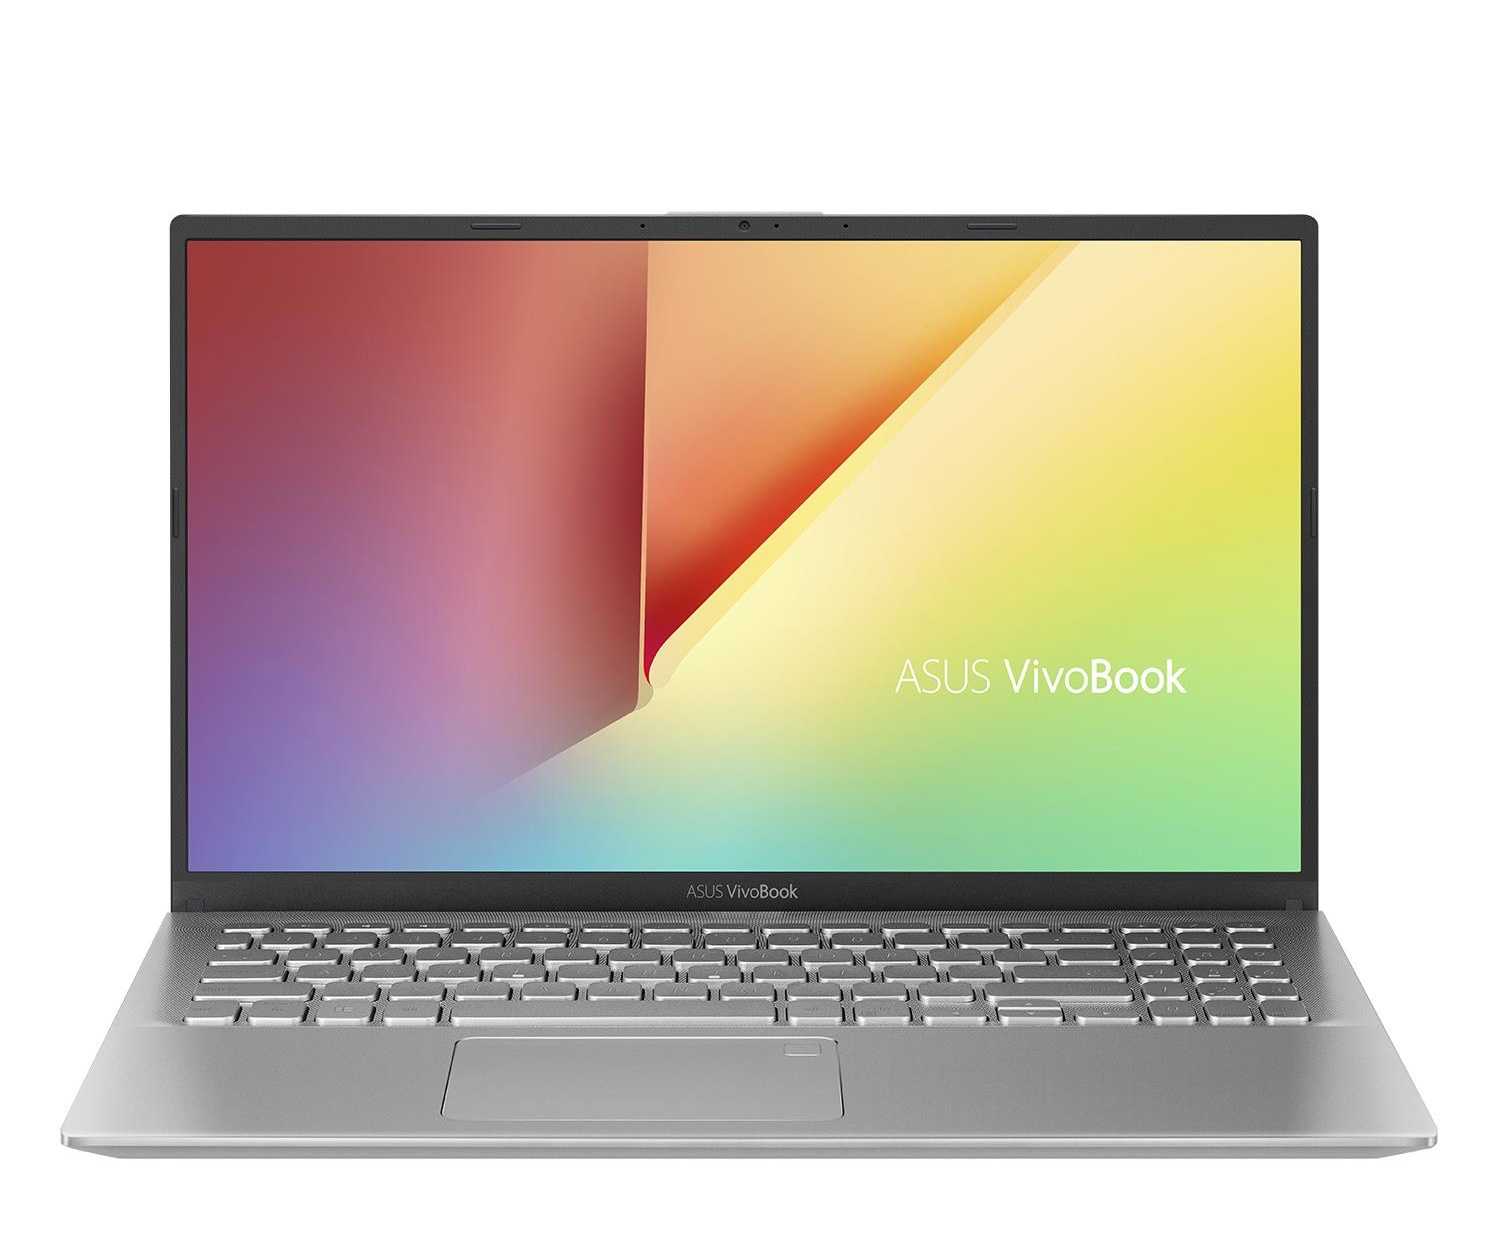 Ноутбук asus vivobook x542ua-dm696t — купить, цена и характеристики, отзывы